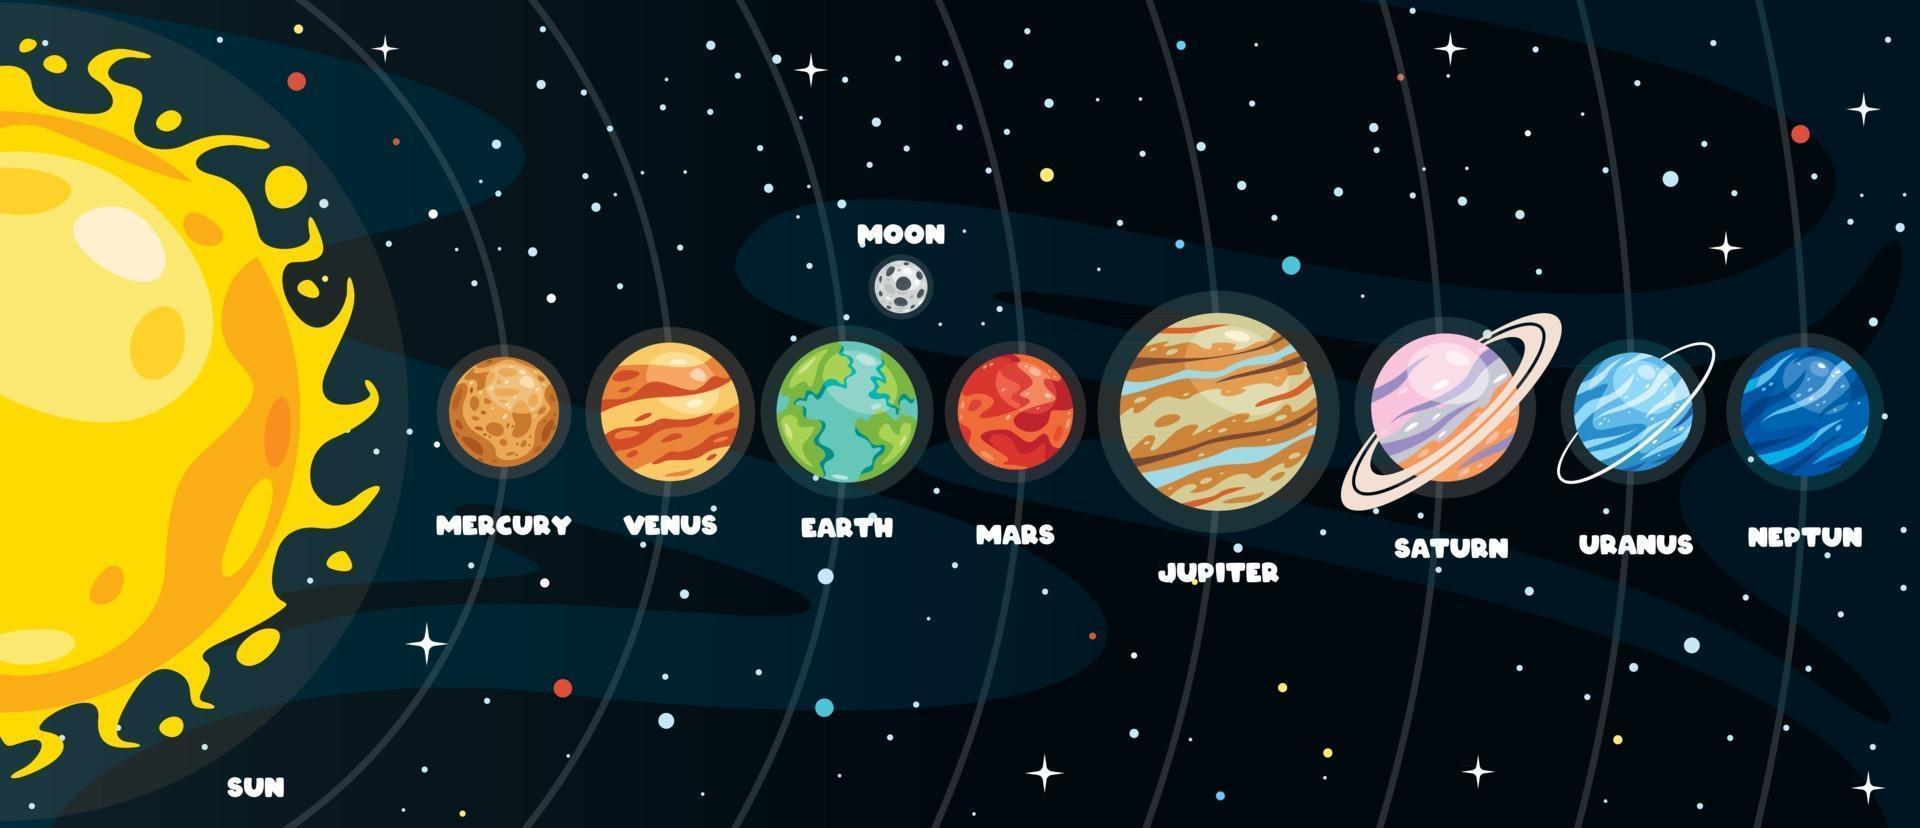 planetas coloridos do sistema solar vetor